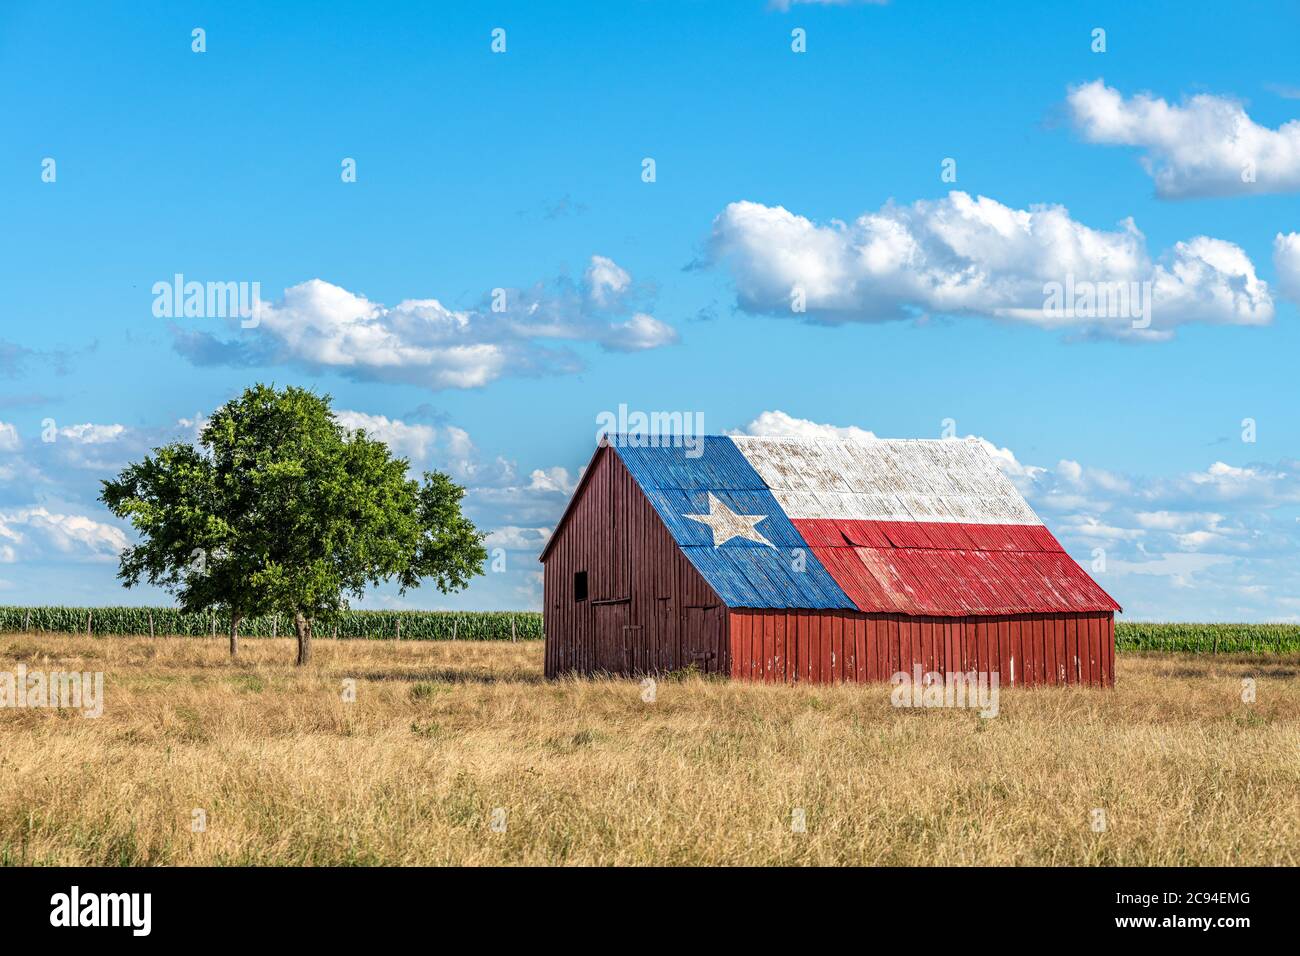 Une ancienne grange abandonnée avec le symbole du Texas peint sur le toit se trouve dans une zone rurale de l'État, encadrée par des terres agricoles. Banque D'Images